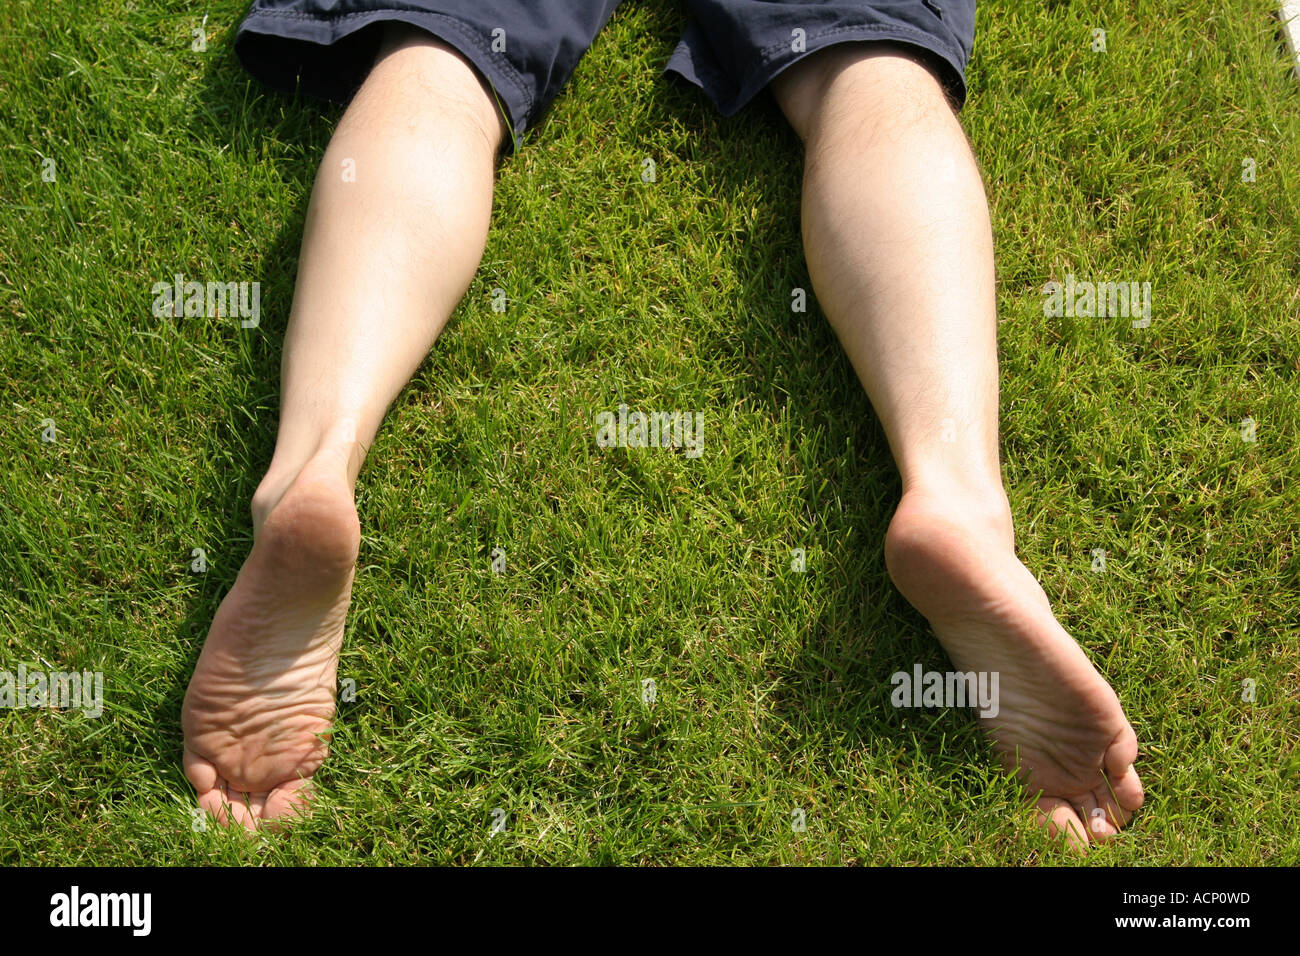 Les jambes sur l'herbe - Beine auf dem Rasen Banque D'Images